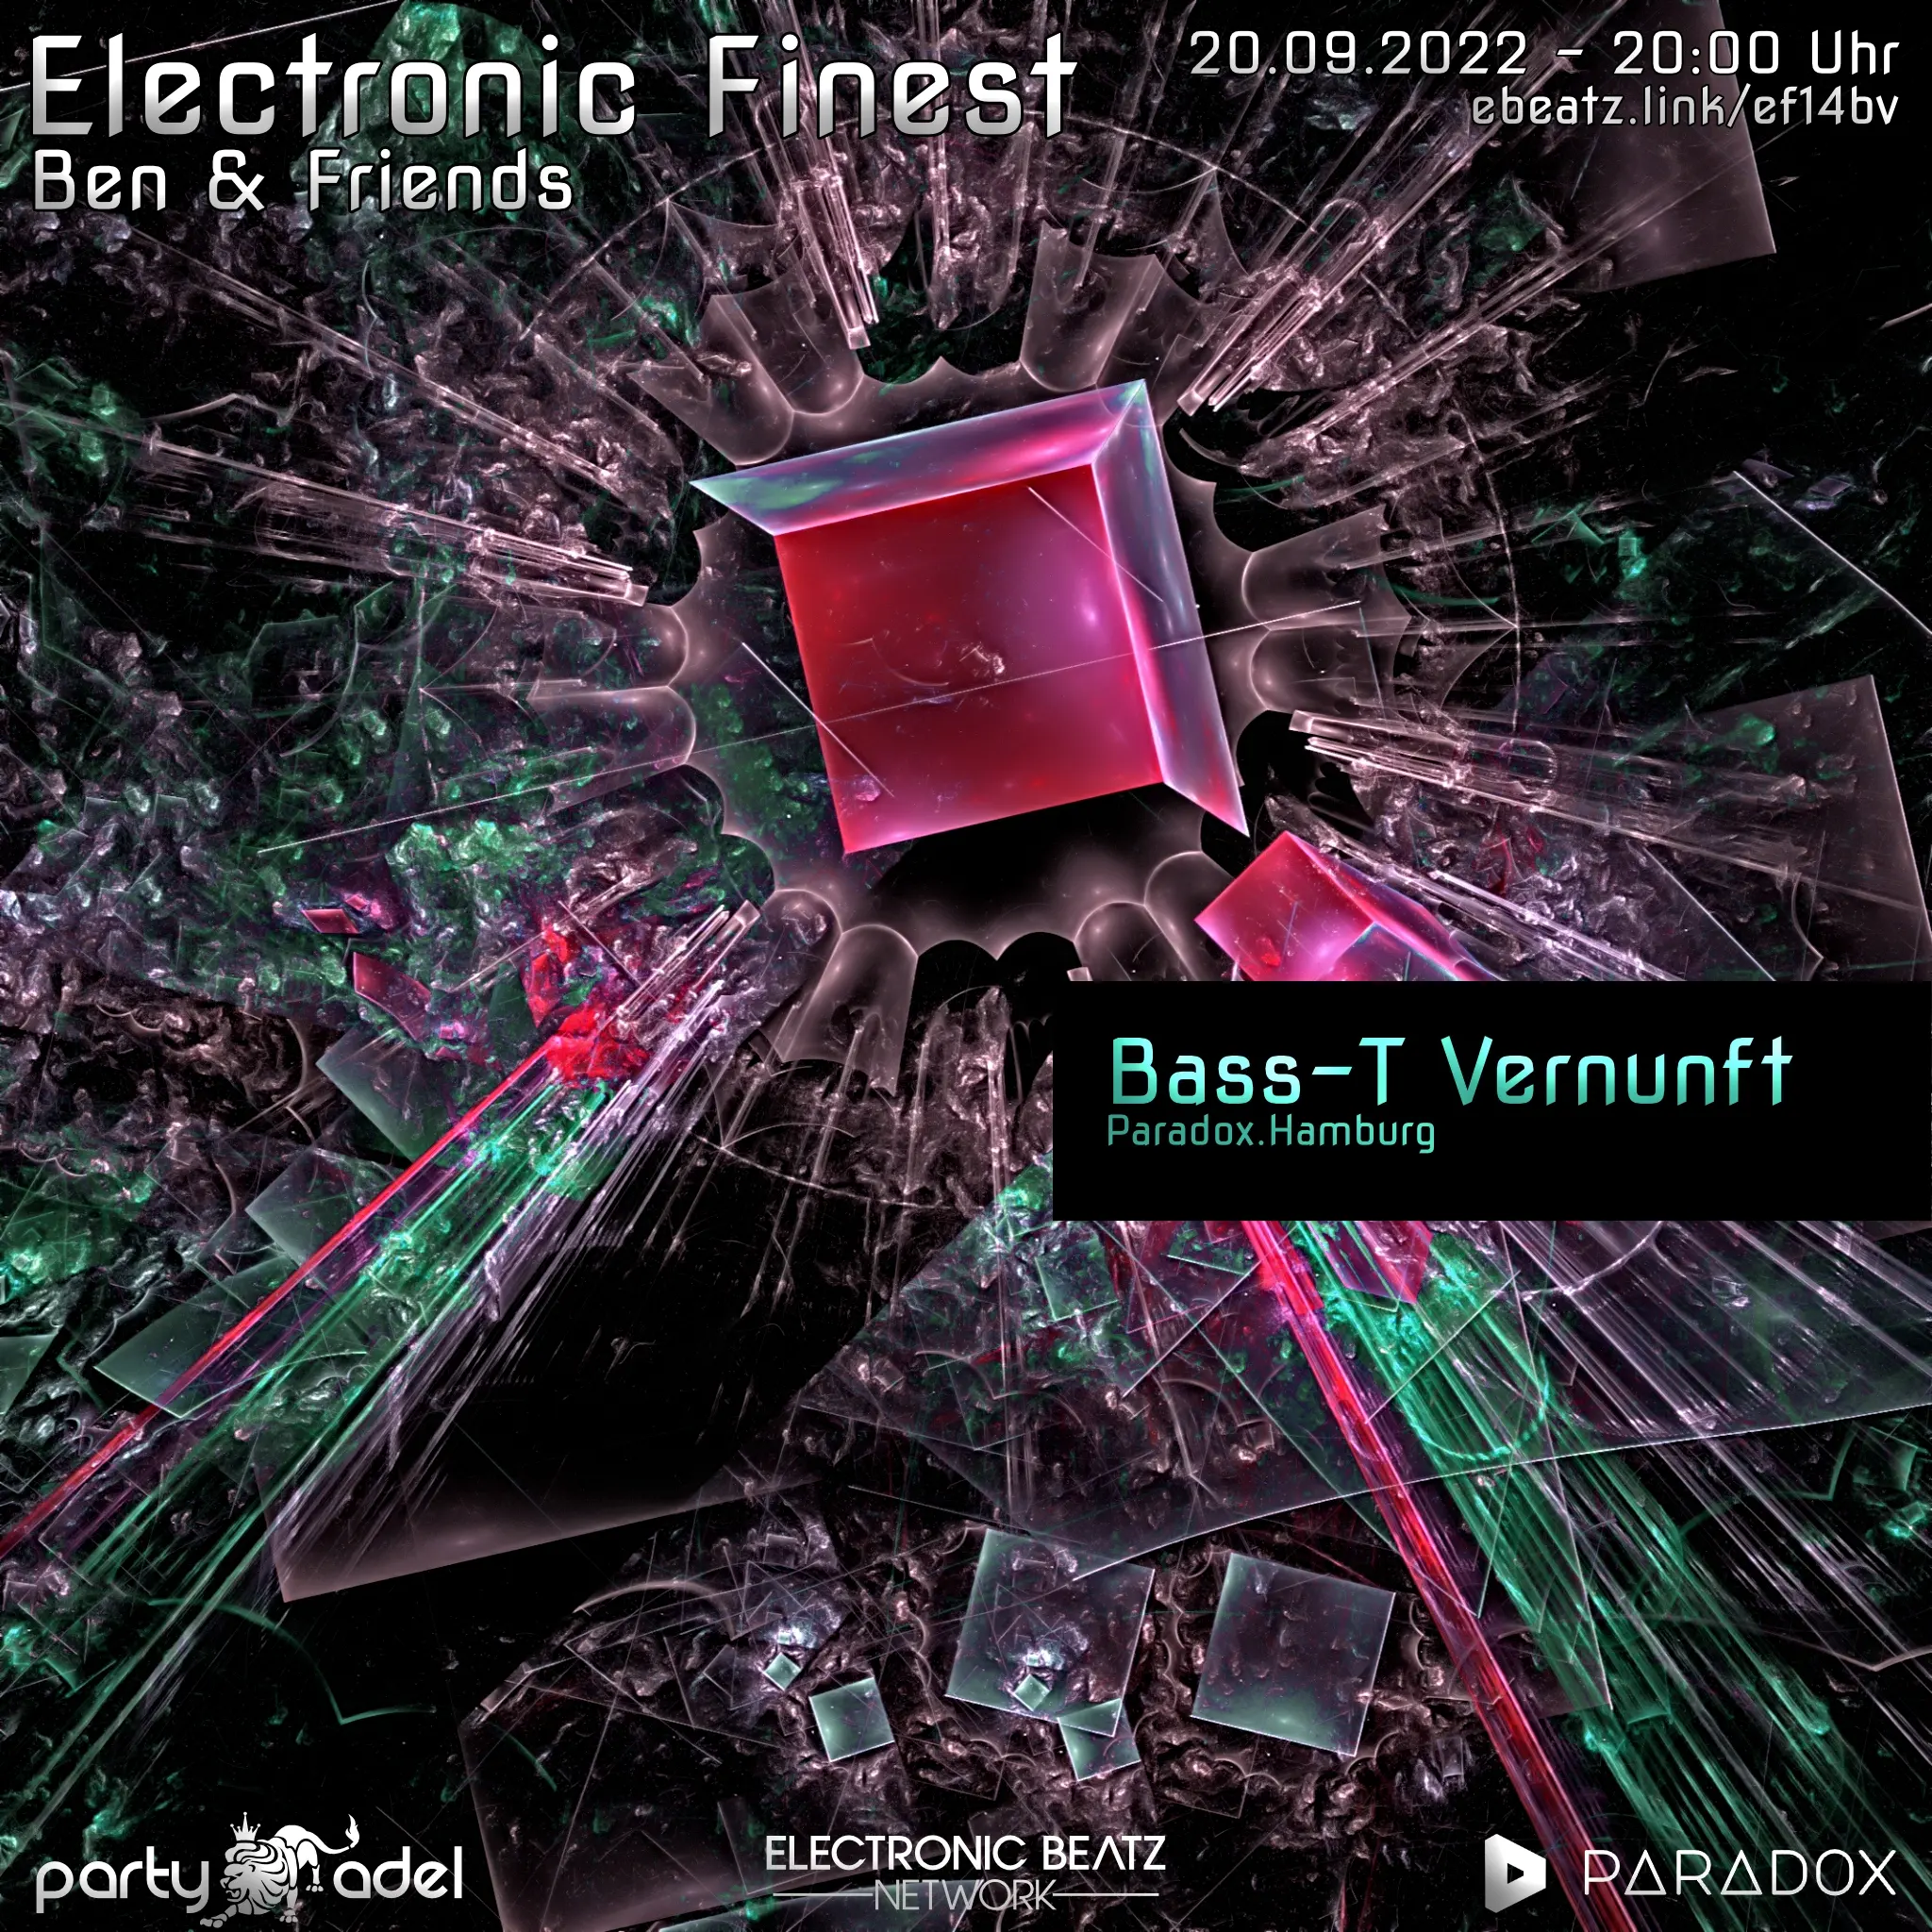 Bass-T Vernunft @ Electronic Finest (20.09.2022)